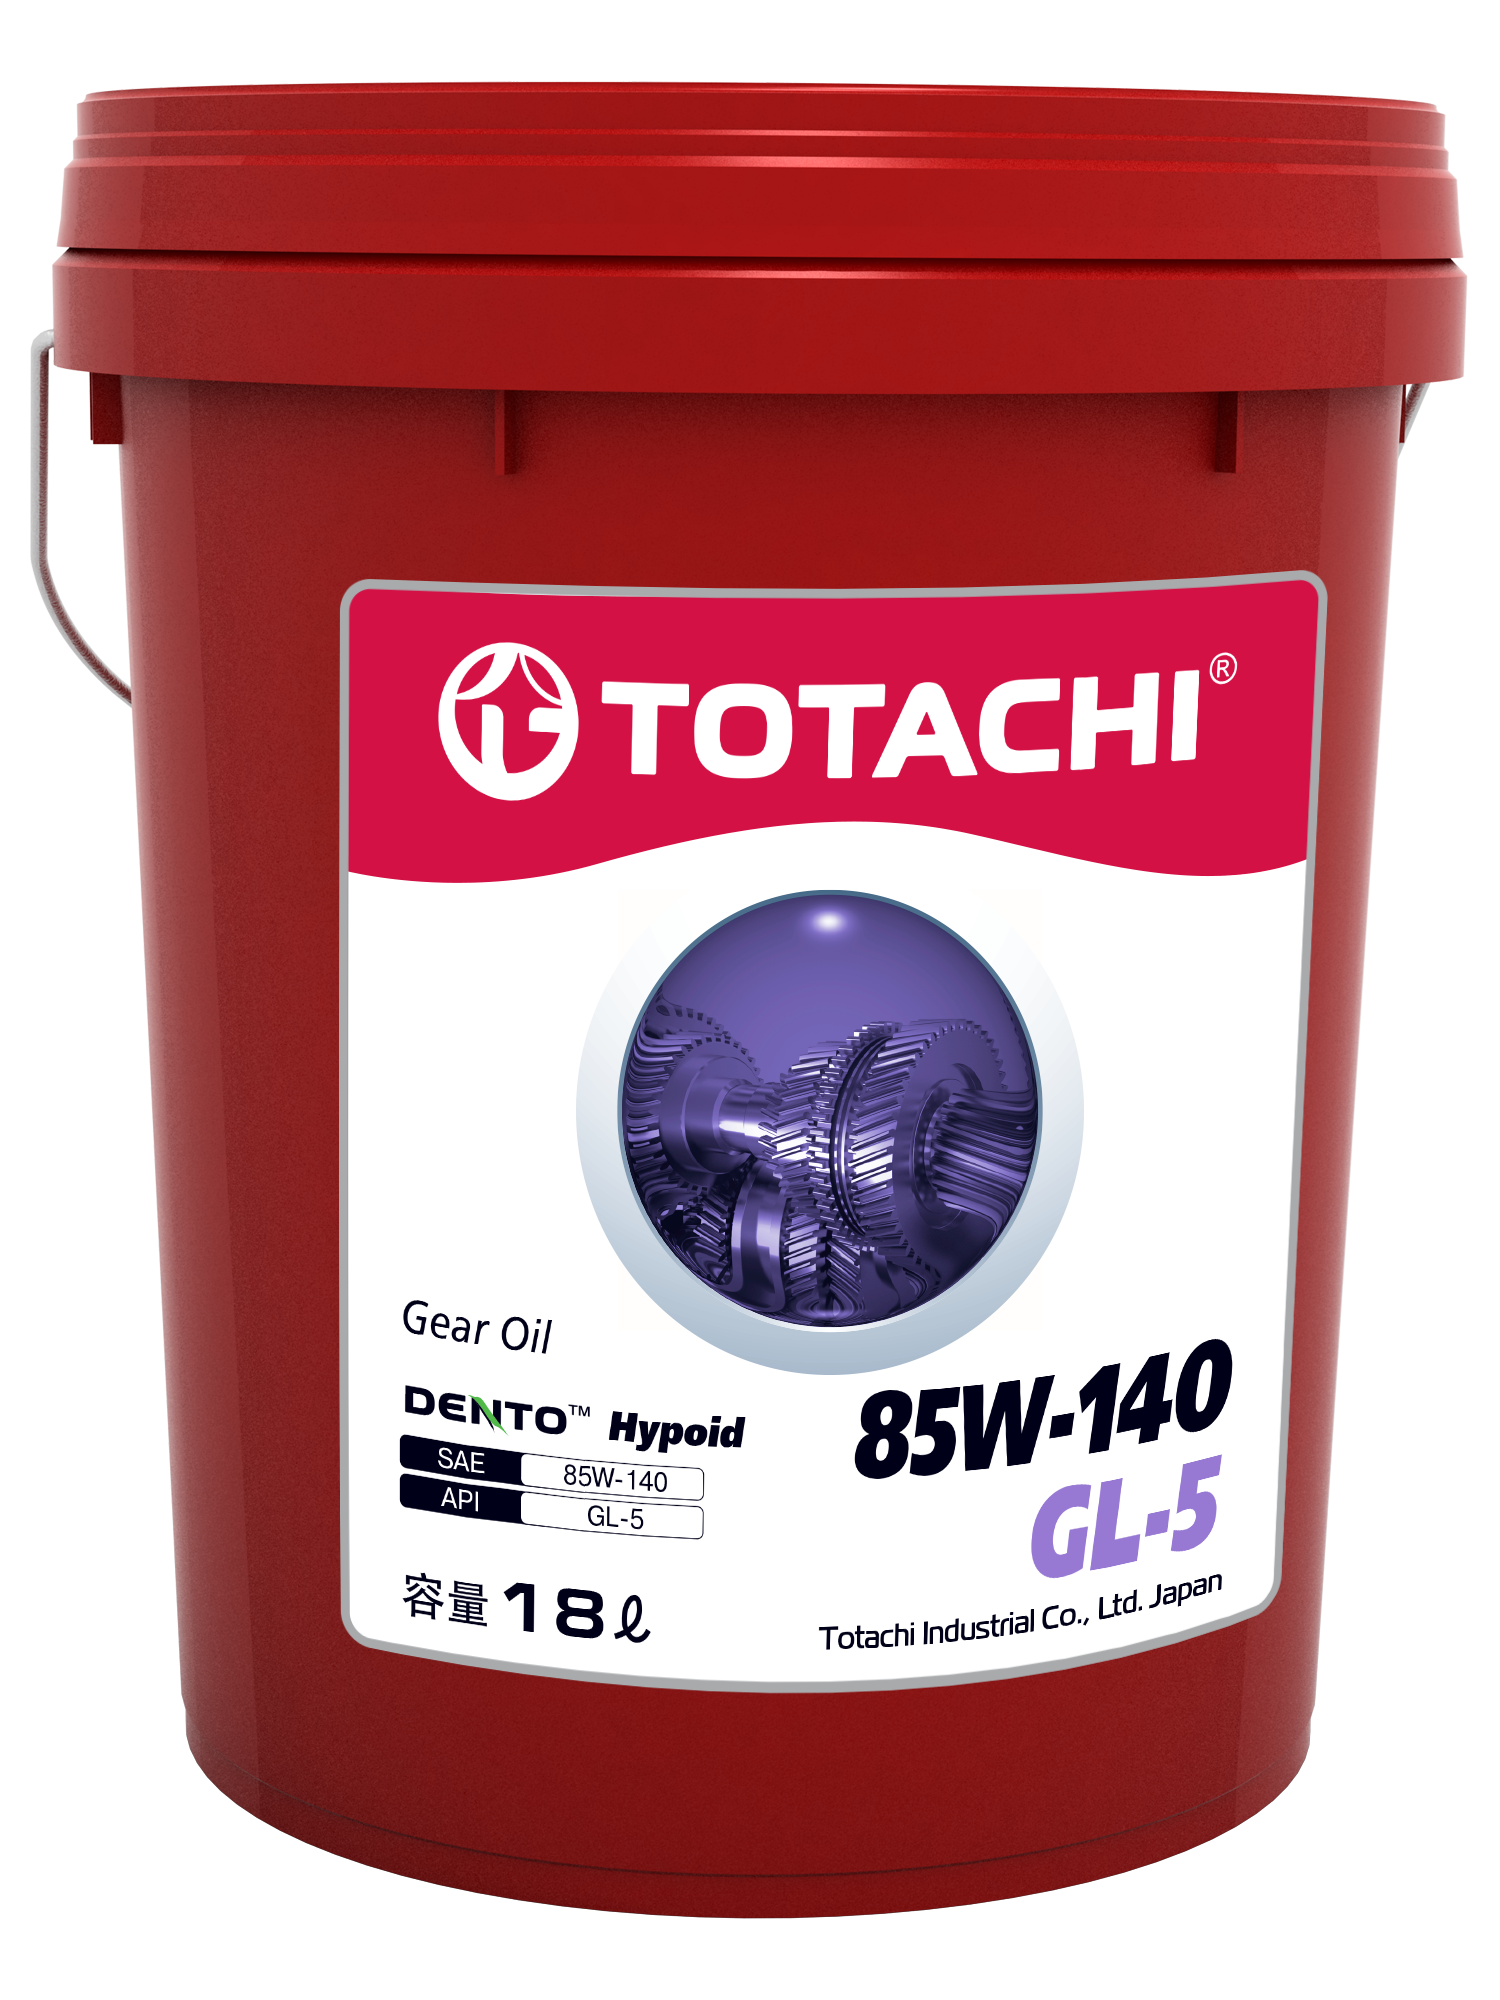 TOTACHI Gear Oil DENTO Hypoid Sae 85W-140